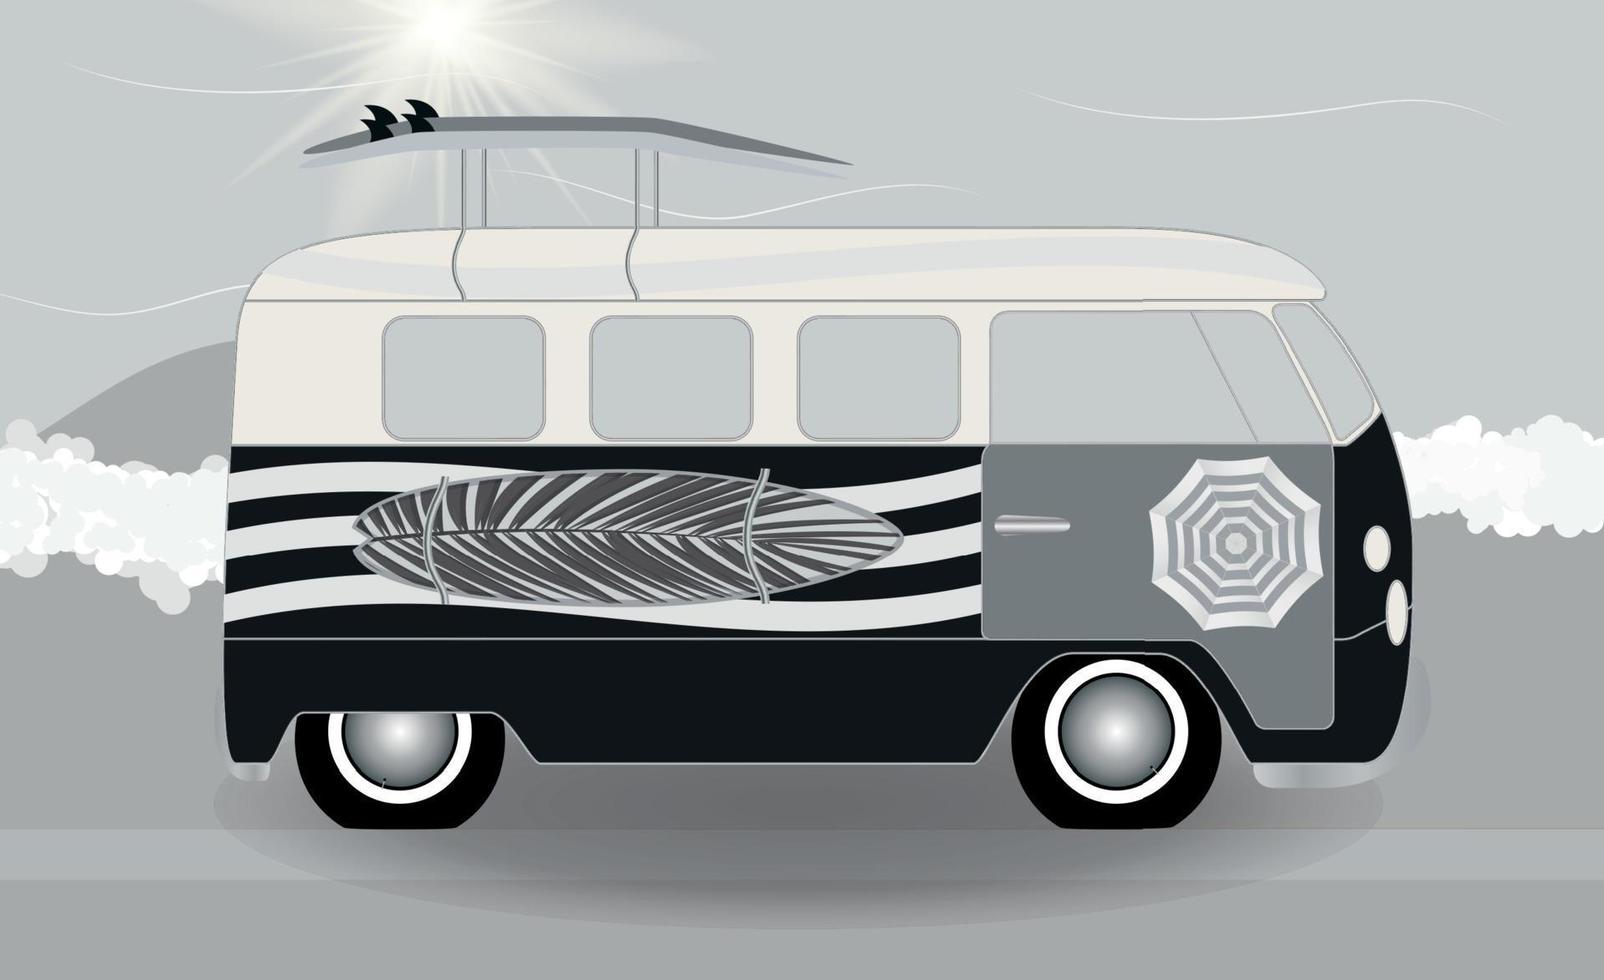 tecknad skåpbil med surfbrädor som står i vägen vid havet. vektor illustration.